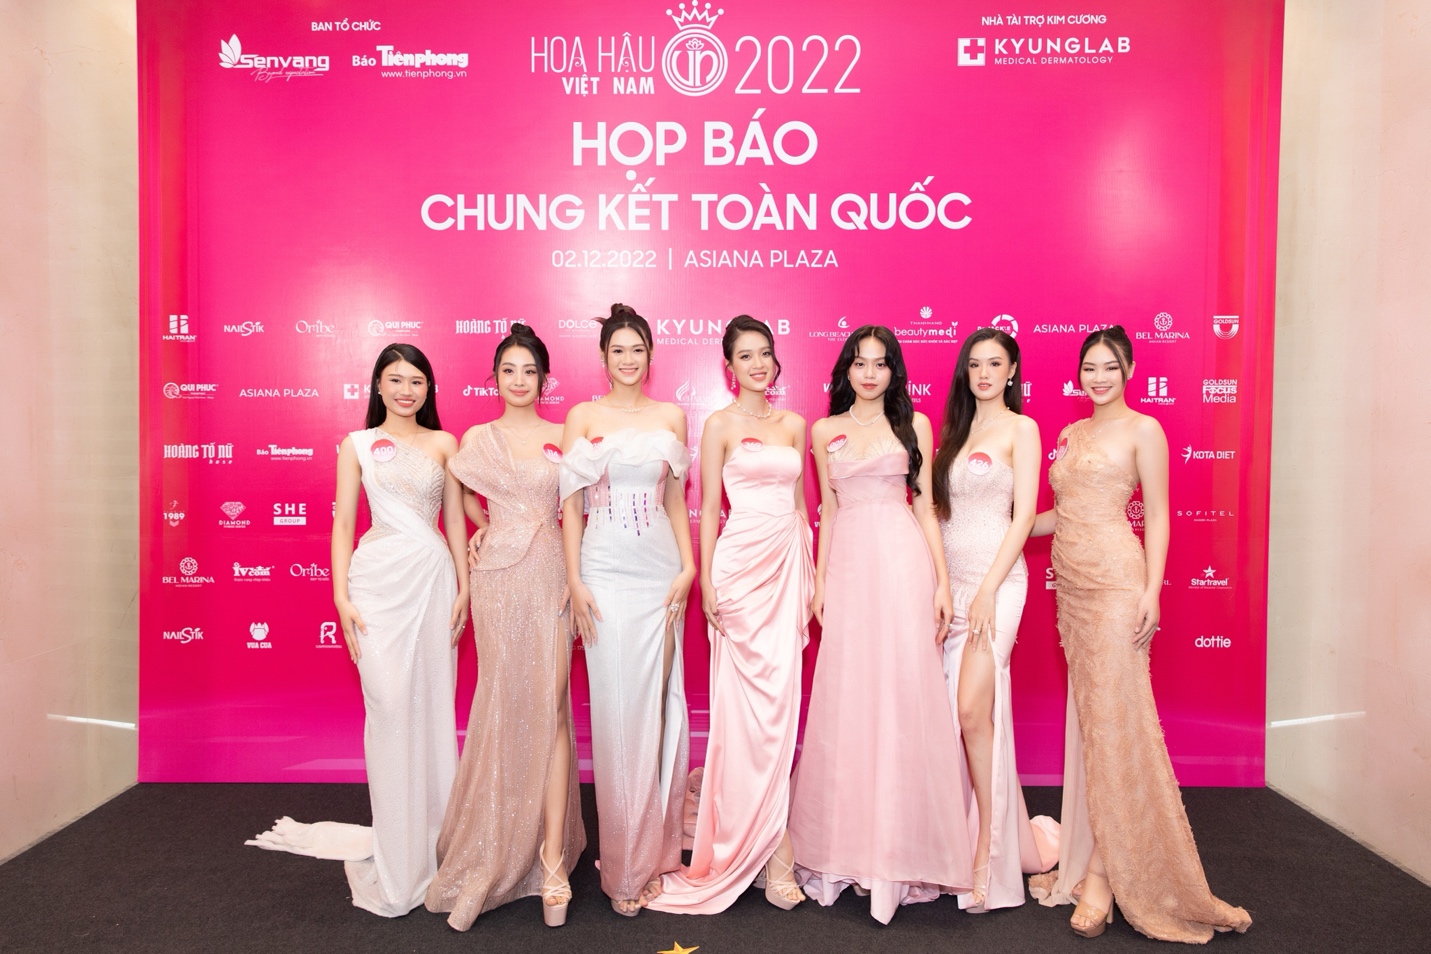 Dàn Hoa hậu, Á hậu đổ bộ tại thảm đỏ họp báo chung kết toàn quốc Hoa hậu Việt Nam 2022 - Ảnh 8.